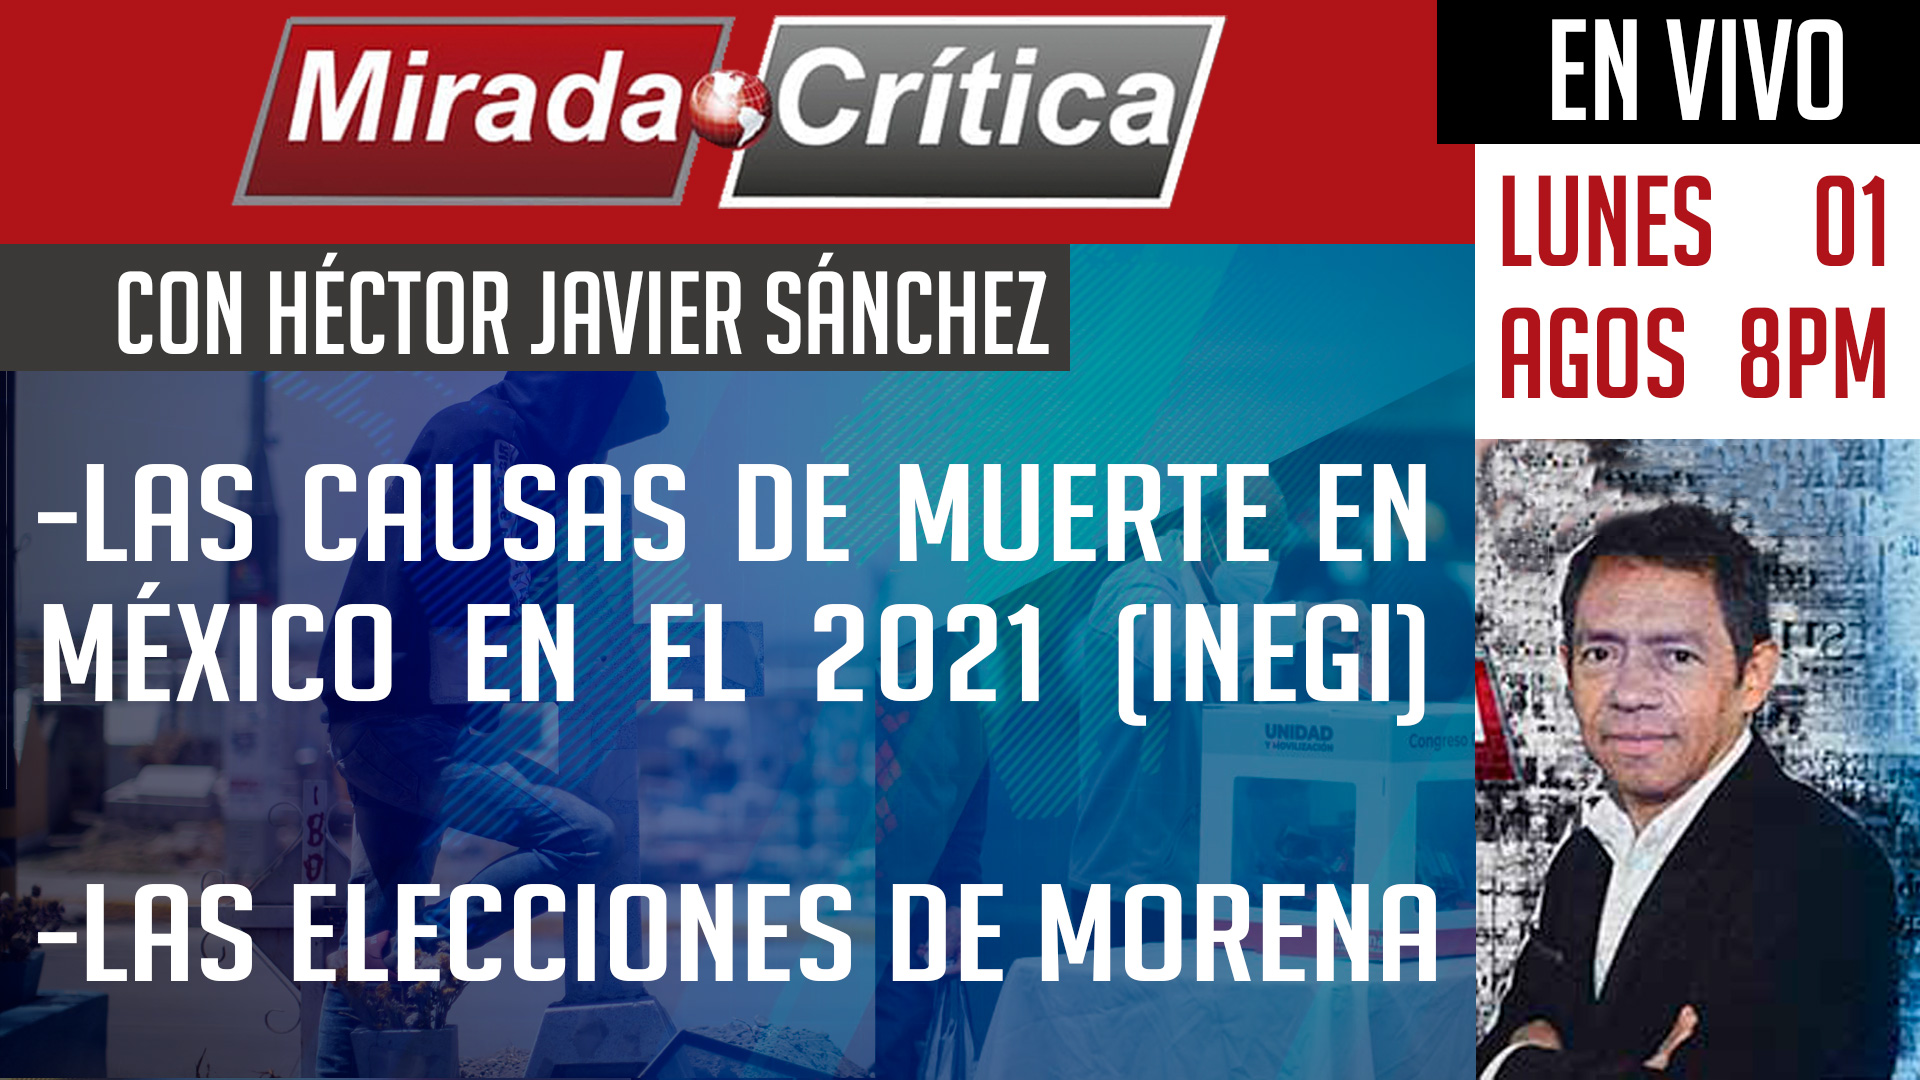 Las causas de muerte en México en el 2021 (INEGI) / Las elecciones de Morena - Mirada Crítica